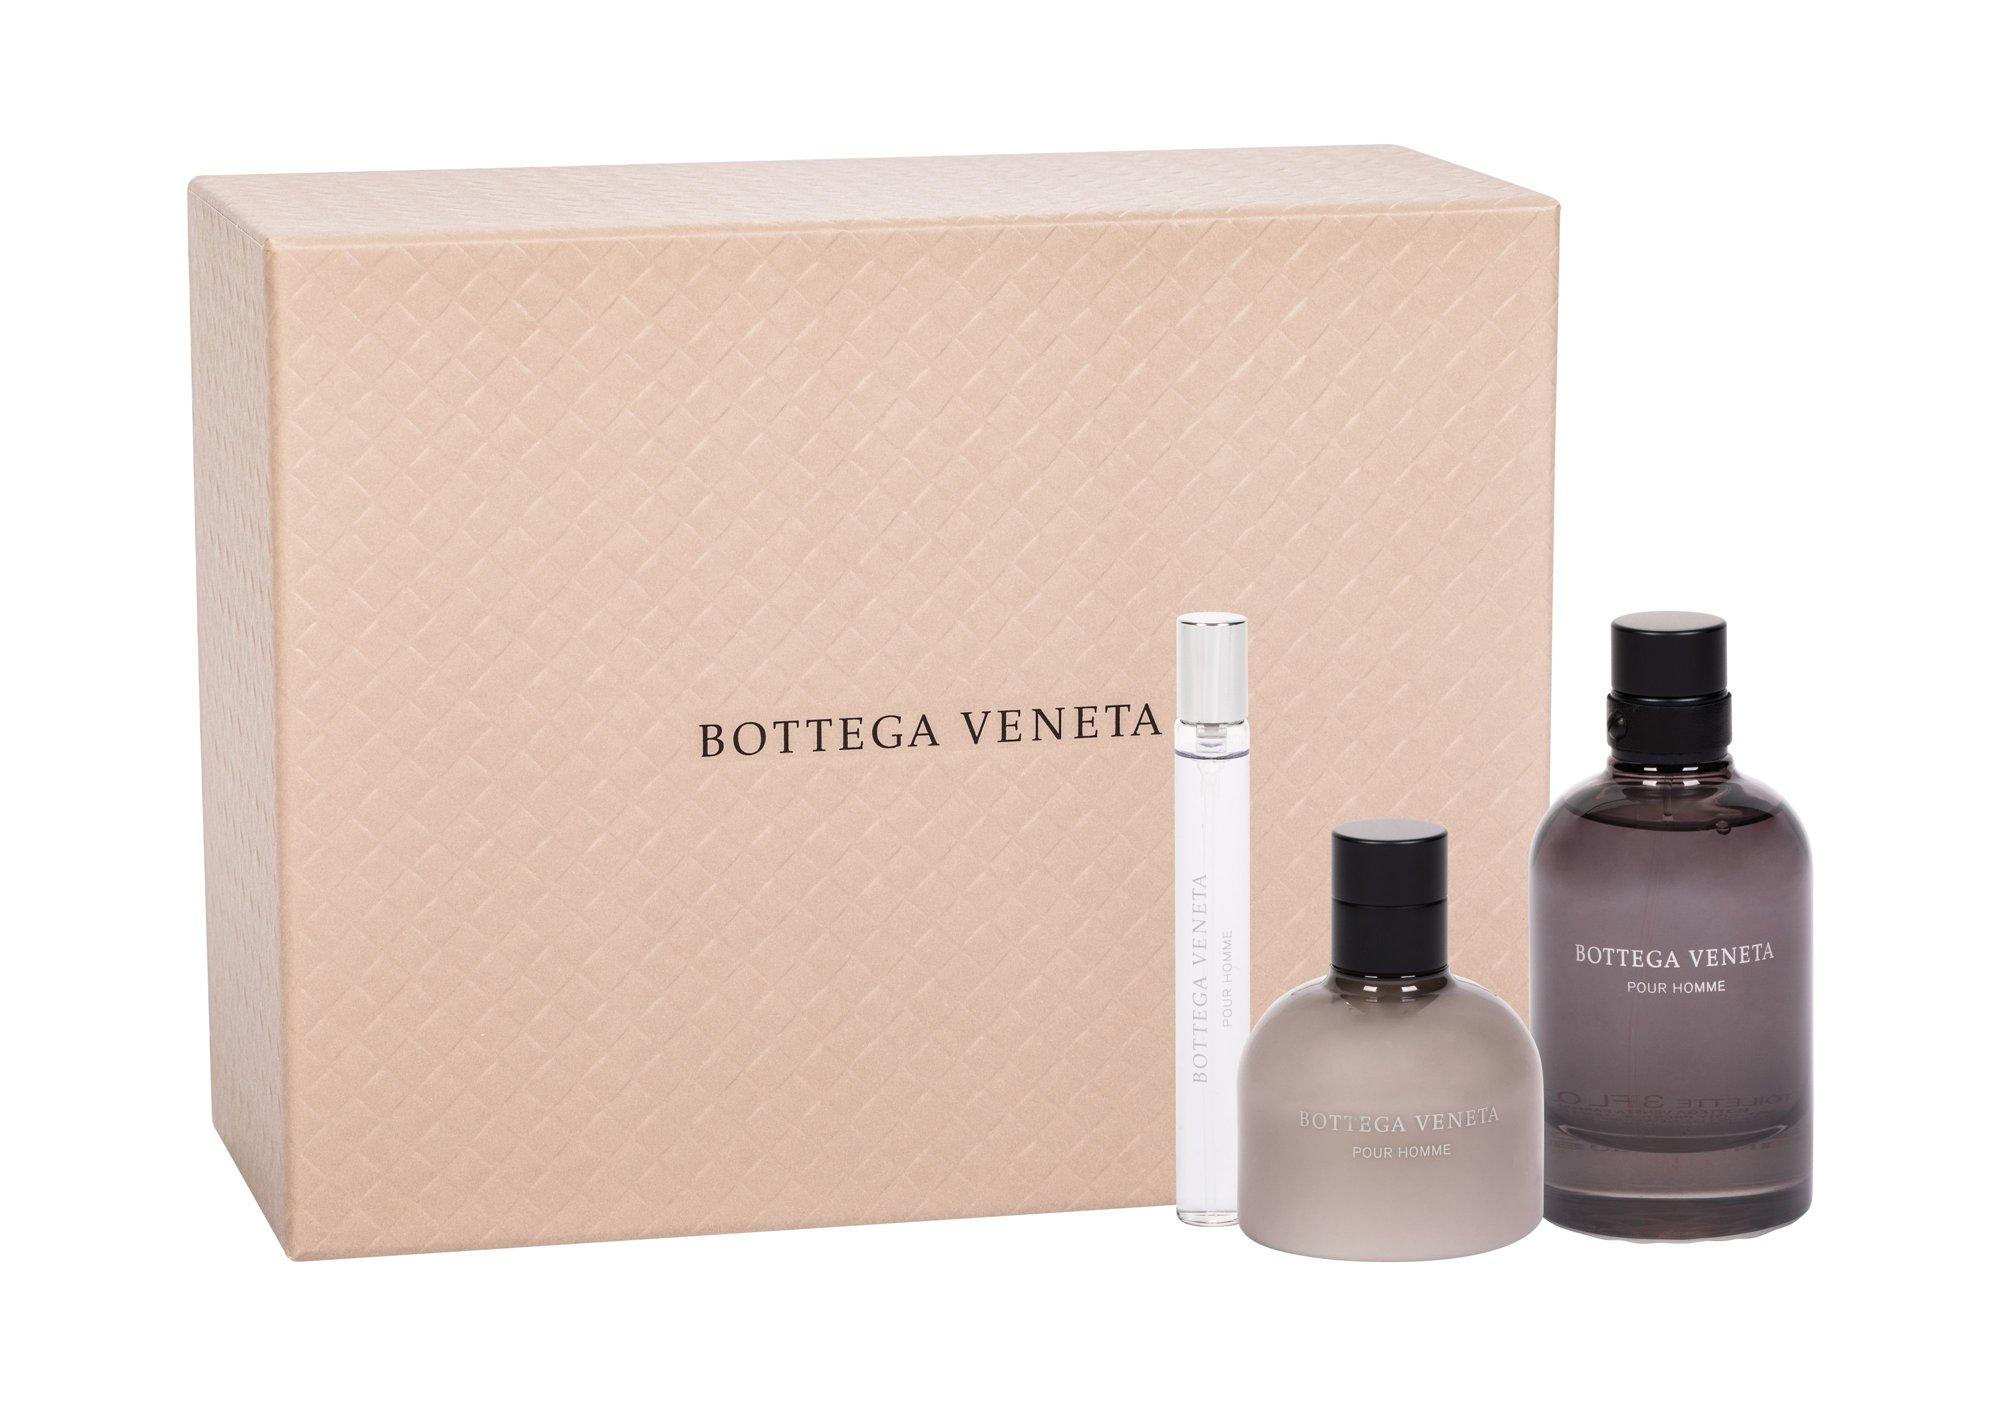 Bottega Veneta Bottega Veneta Pour Homme, Toaletní voda 90 ml + Toaletní voda 10 ml + Balzám po holení 100 ml